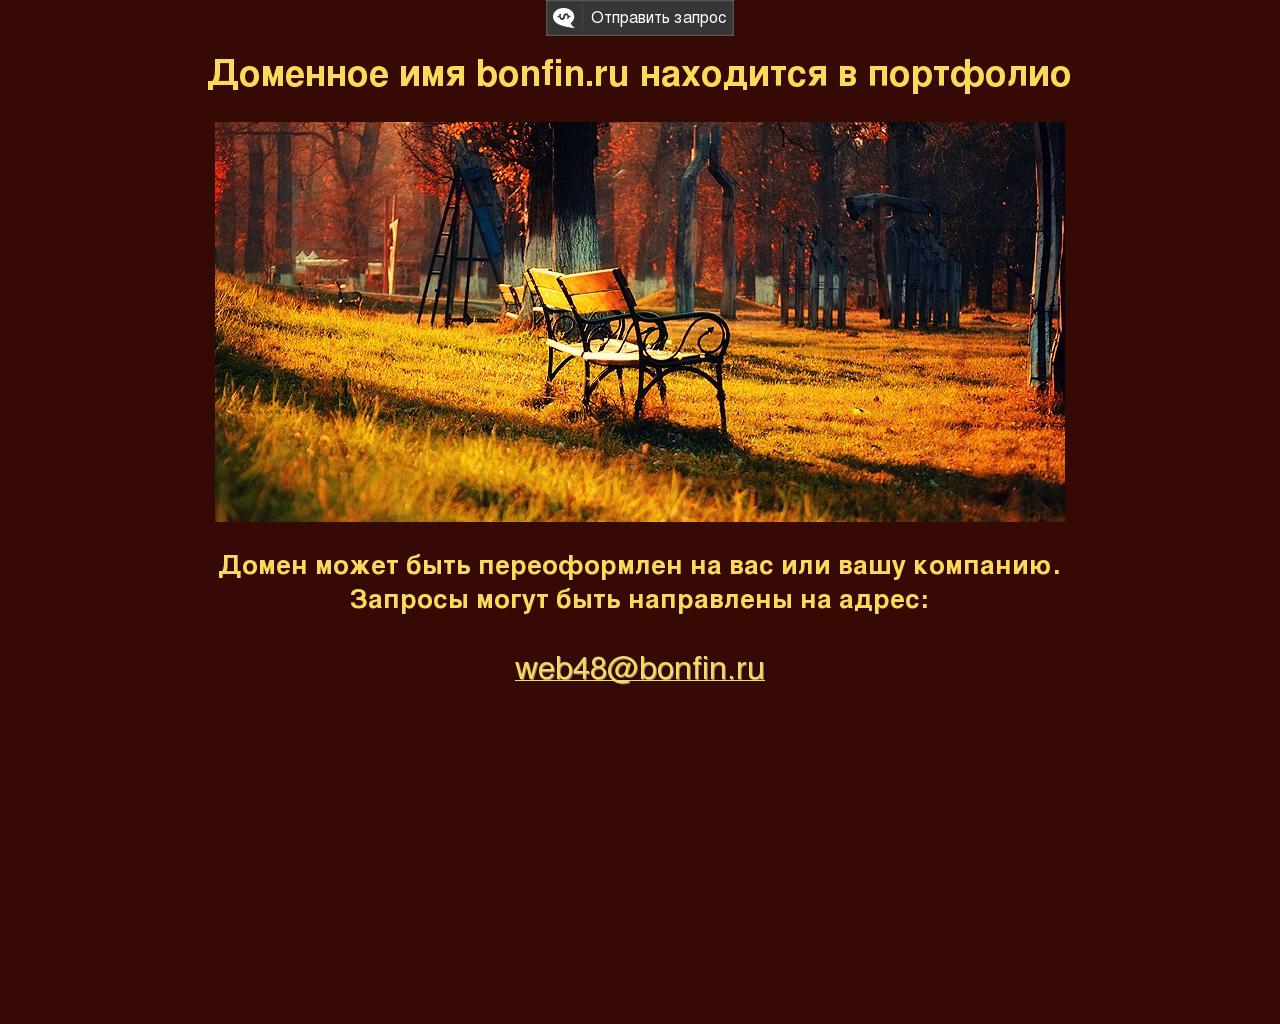 Изображение сайта bonfin.ru в разрешении 1280x1024